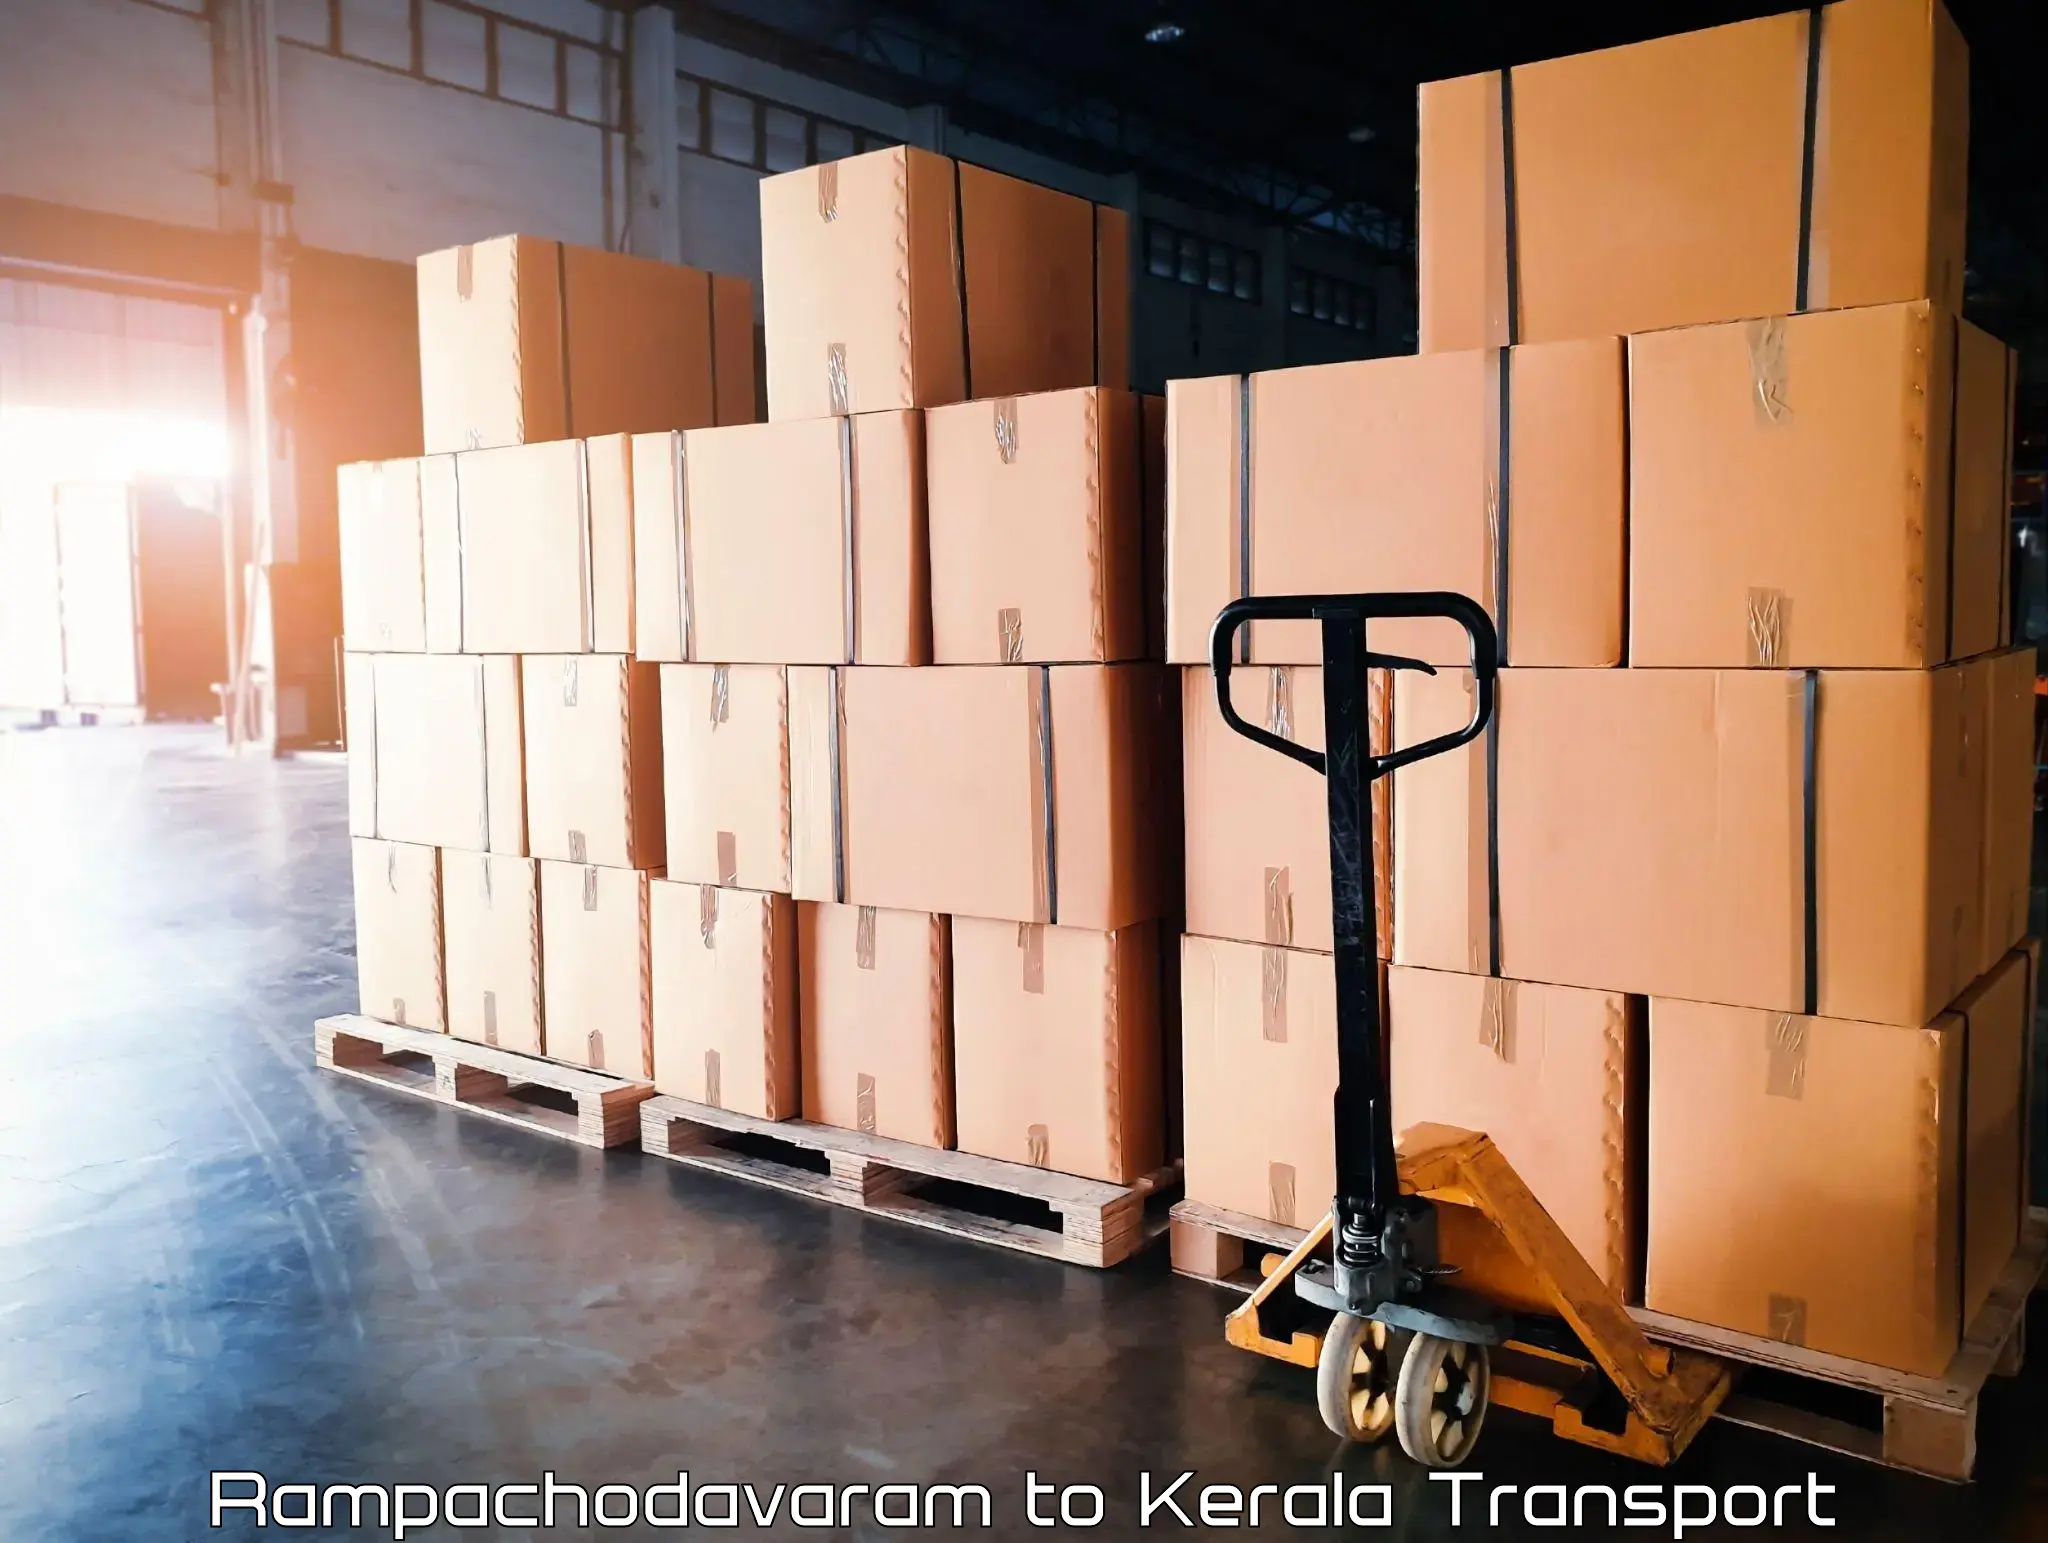 Truck transport companies in India Rampachodavaram to Kattappana